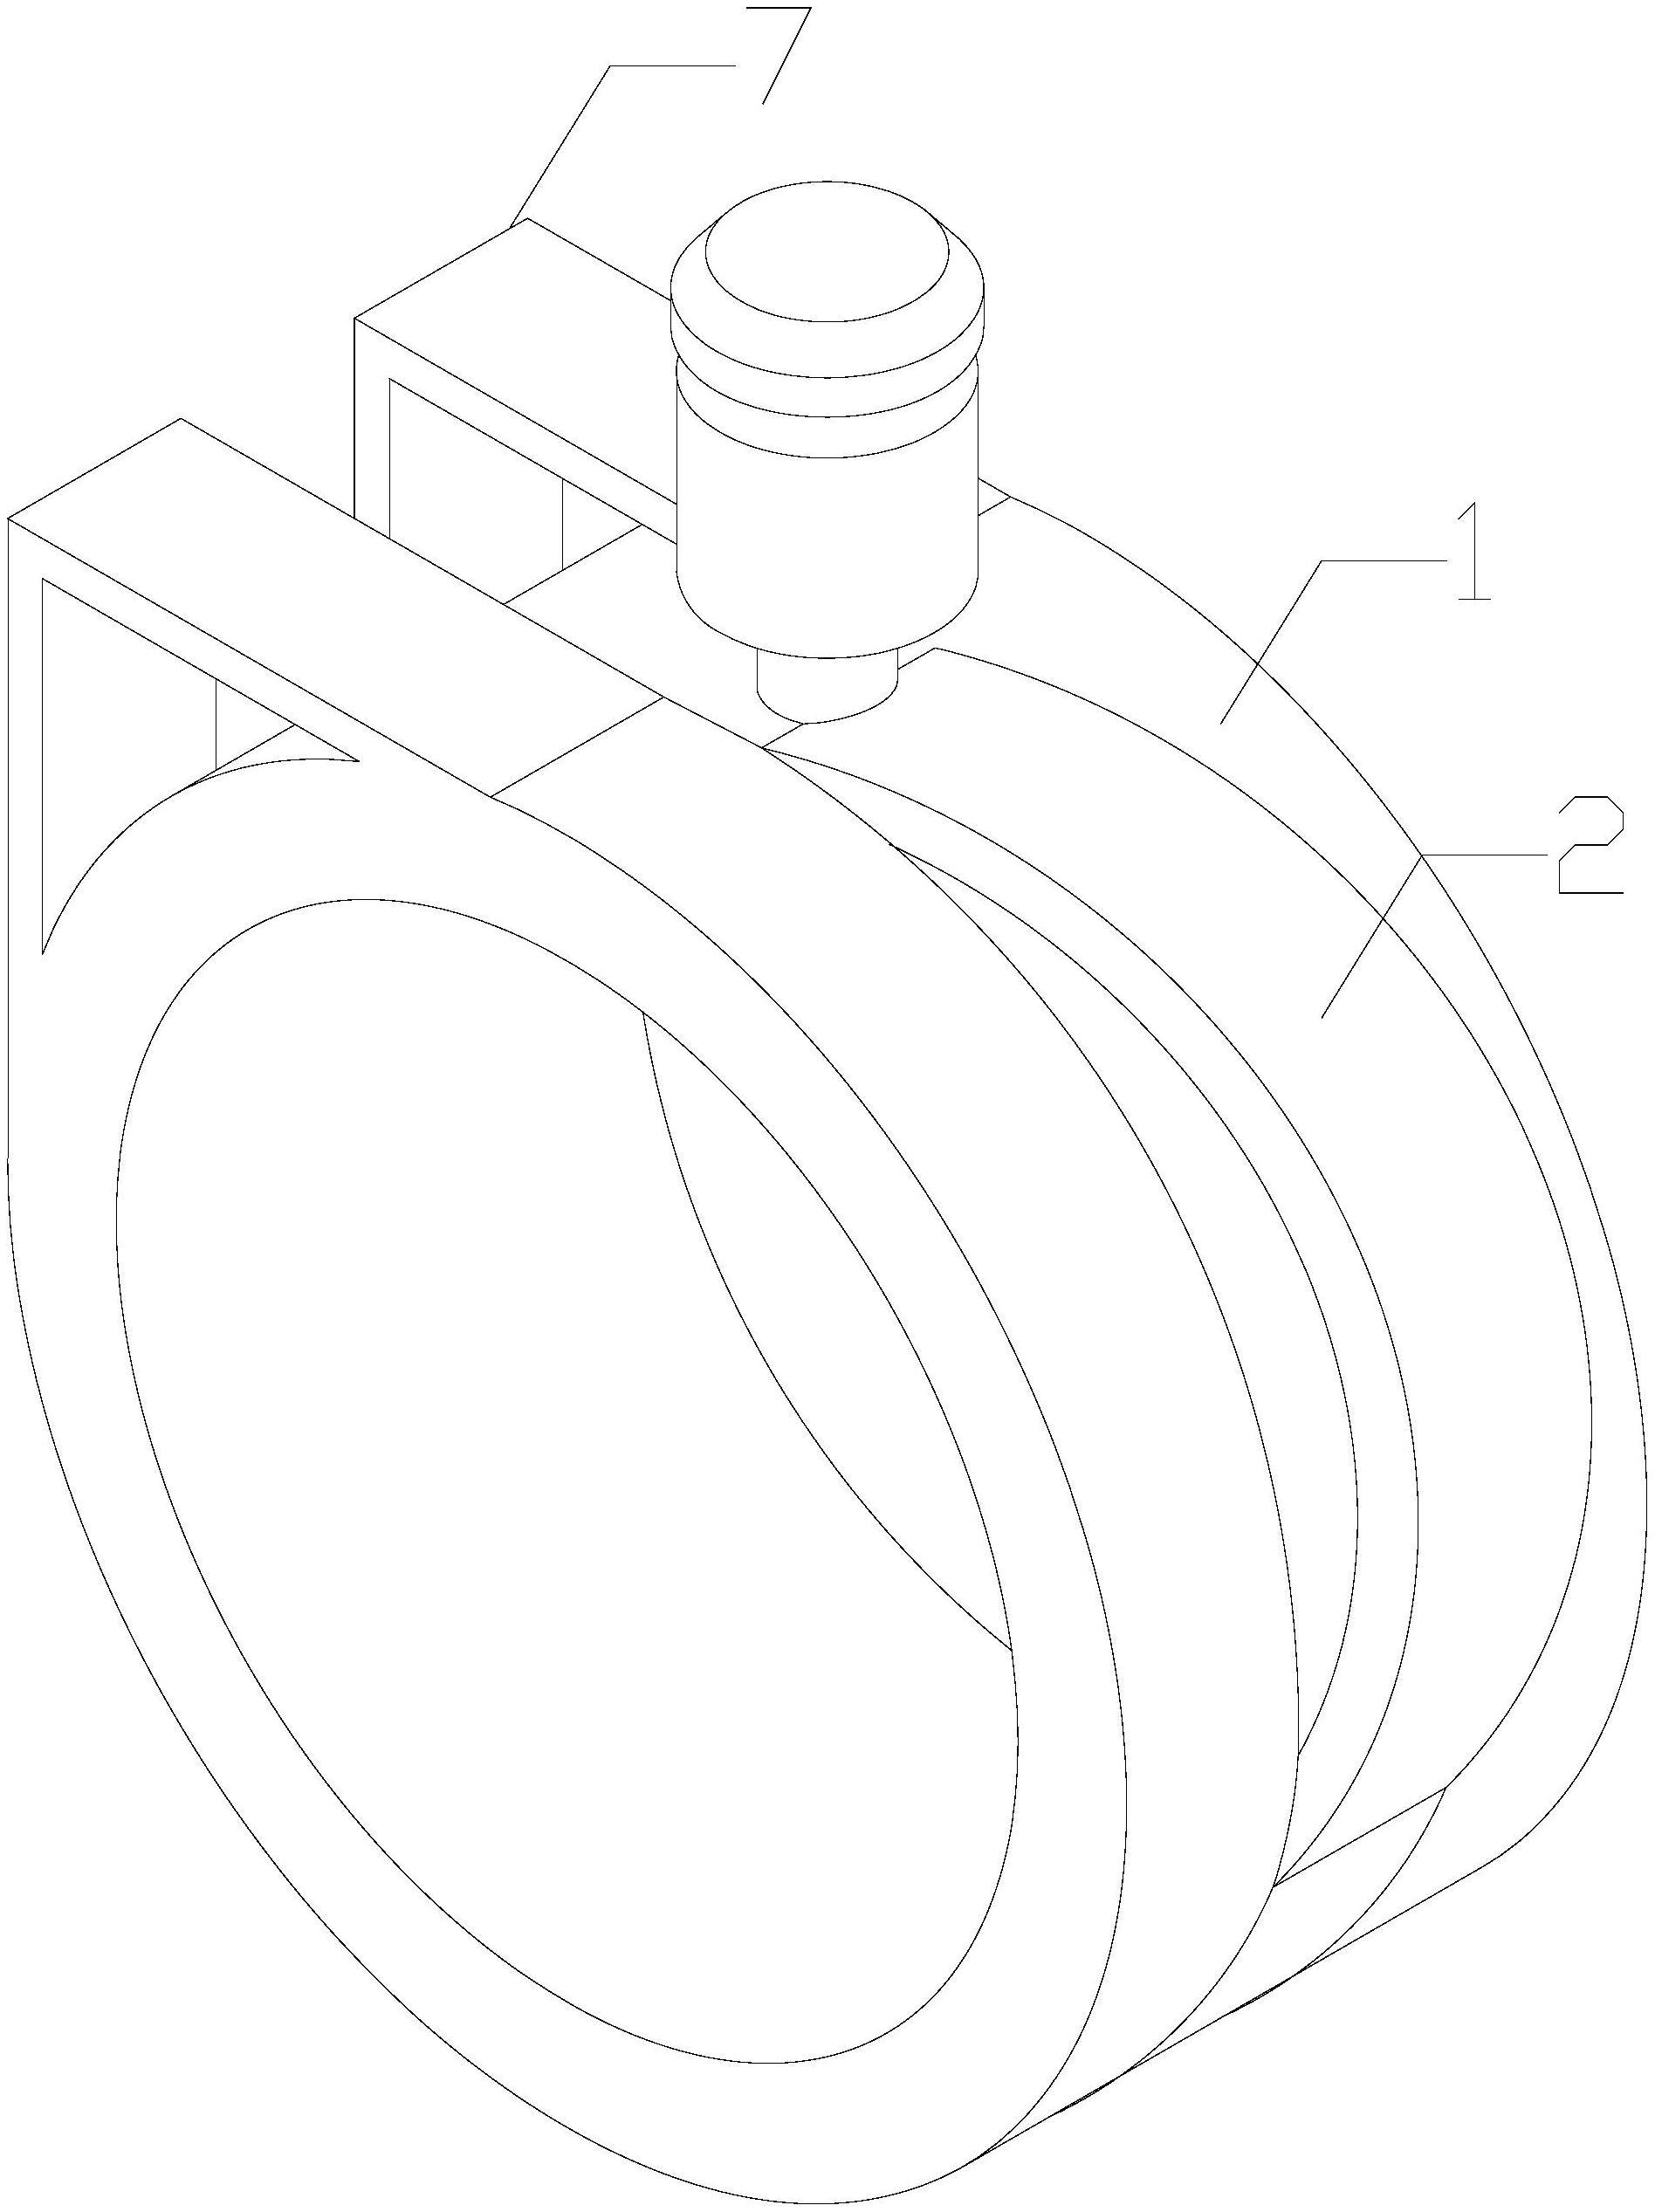 一种基于镶口和戒指连接的可动滑轨结构